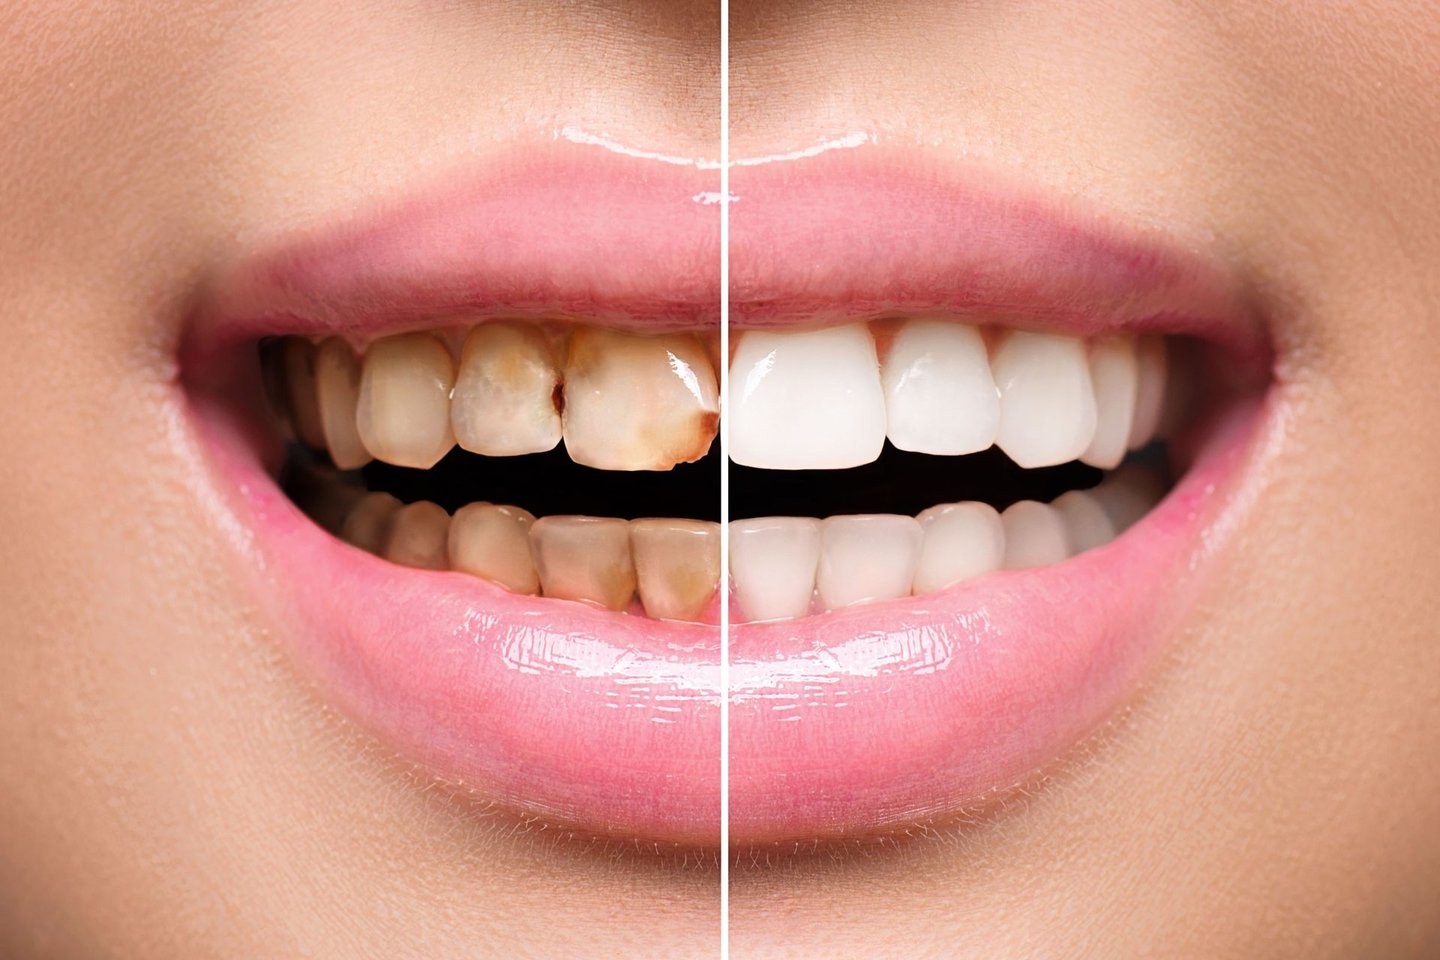  Vidutiniškai per metus žmogus sunaudoja 167 metrus dantų siūlo, 14 litrų dantų skalavimo skysčio, 3 pakuotes dantų pastos.<br> 123rf.com nuotr.